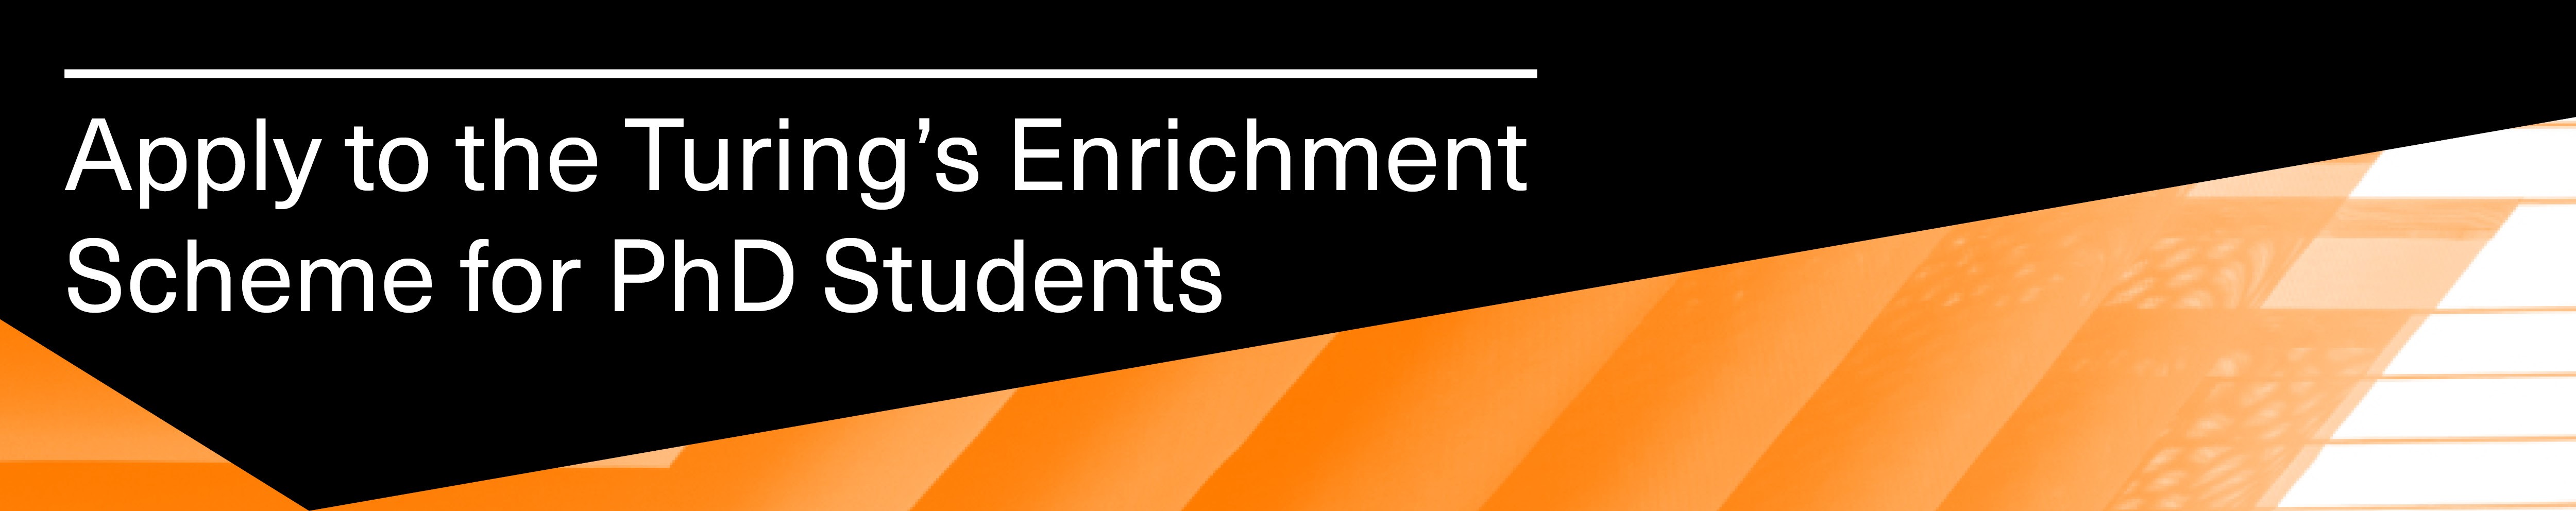 Alan Turing Institute PhD student Enrichment scheme Logo